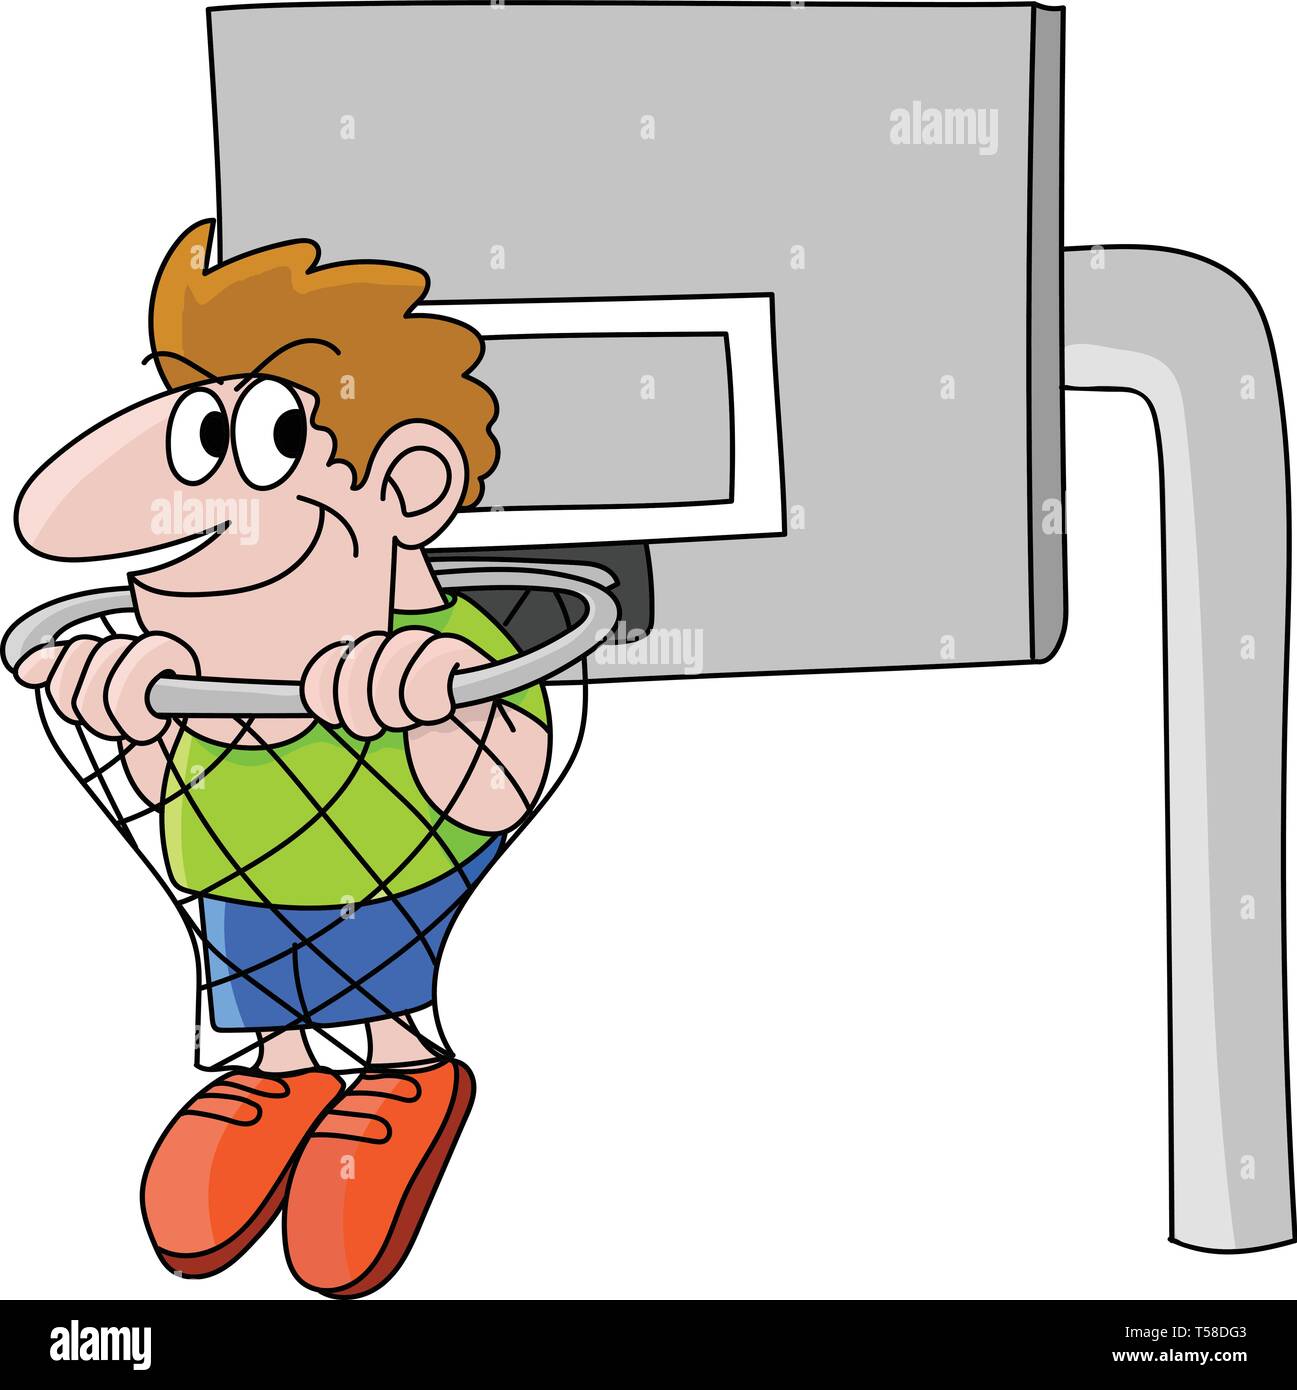 Vector illustration cartoon basketball player Stock-Vektorgrafiken